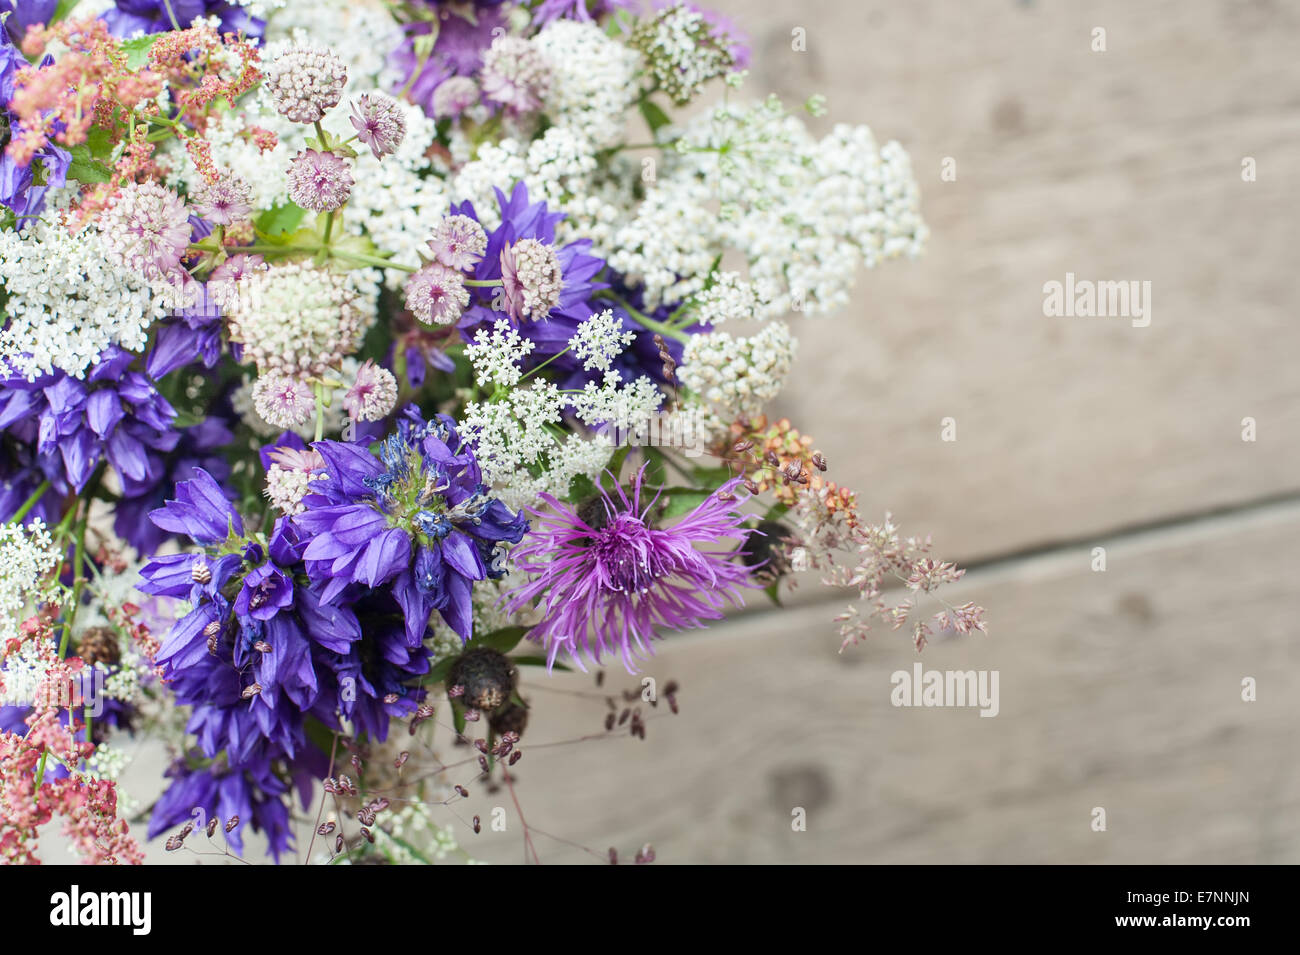 Bella gara bouquet di prato estivo fiori su sfondo di legno. Composizione floreale in zone rurali in stile vintage Foto Stock